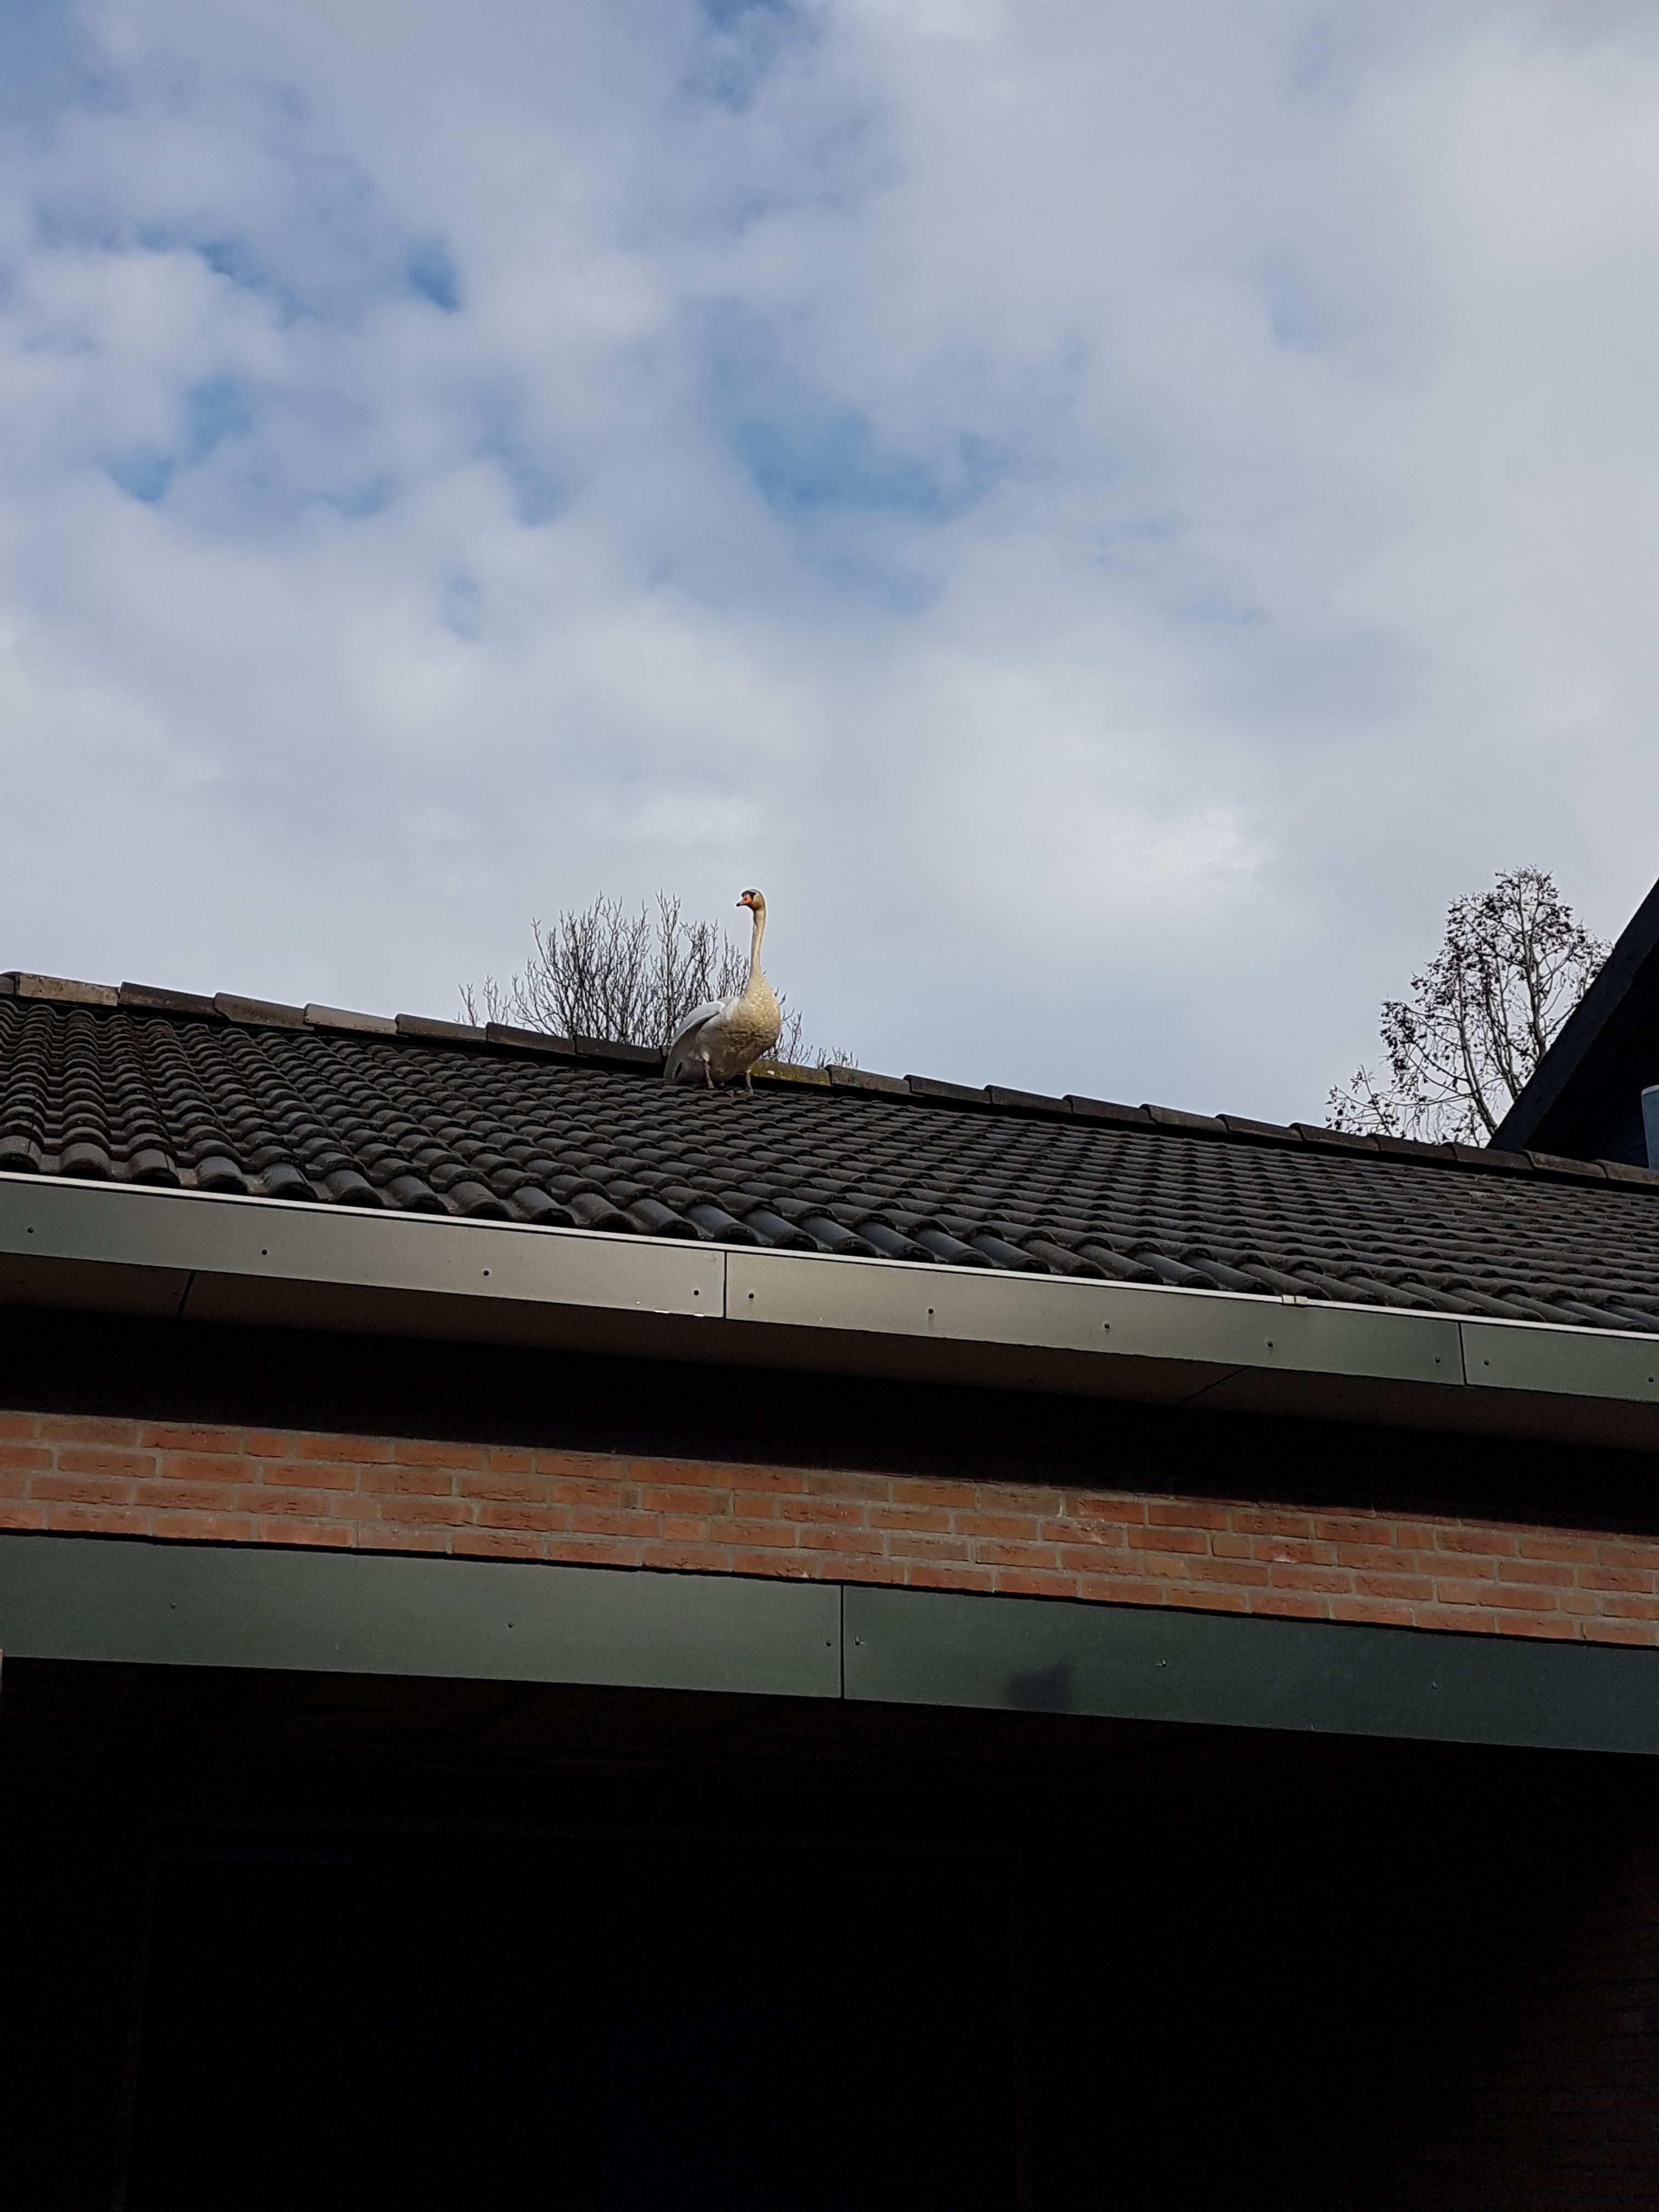 Een zwaan op het dak